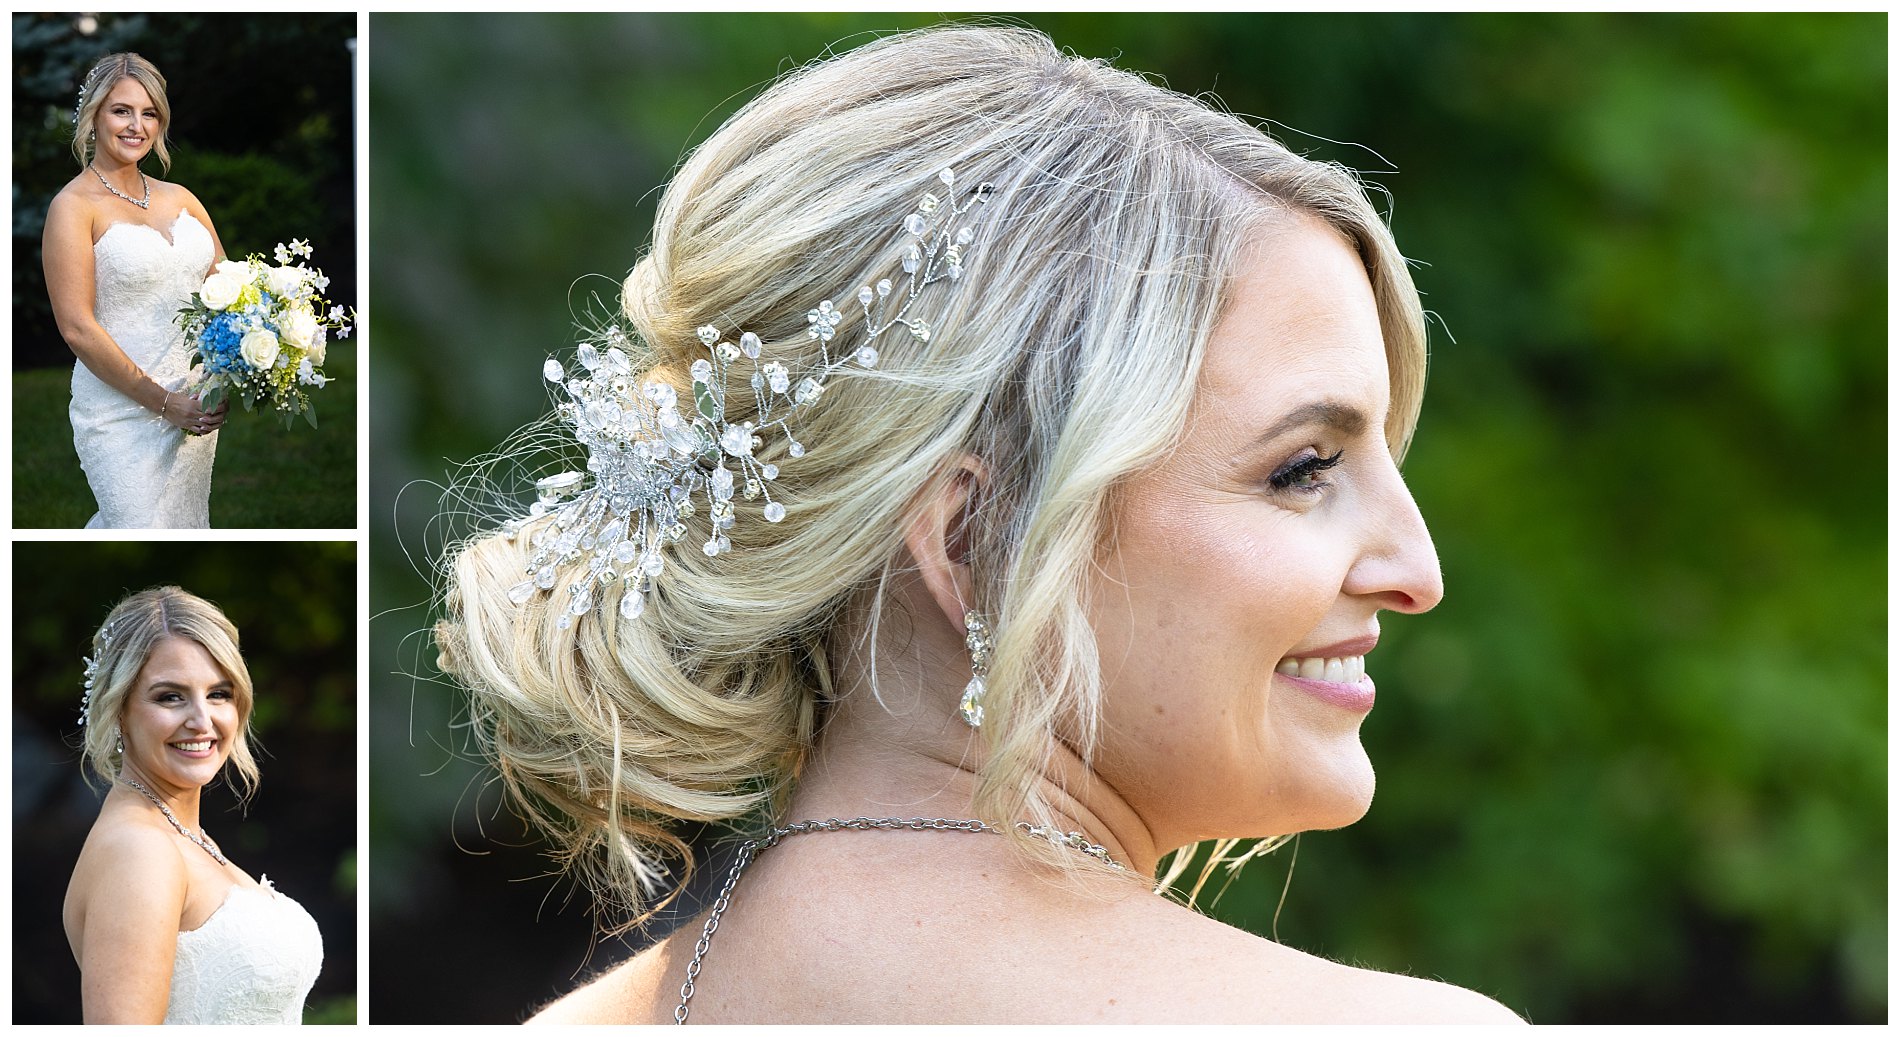 bride's details in hair